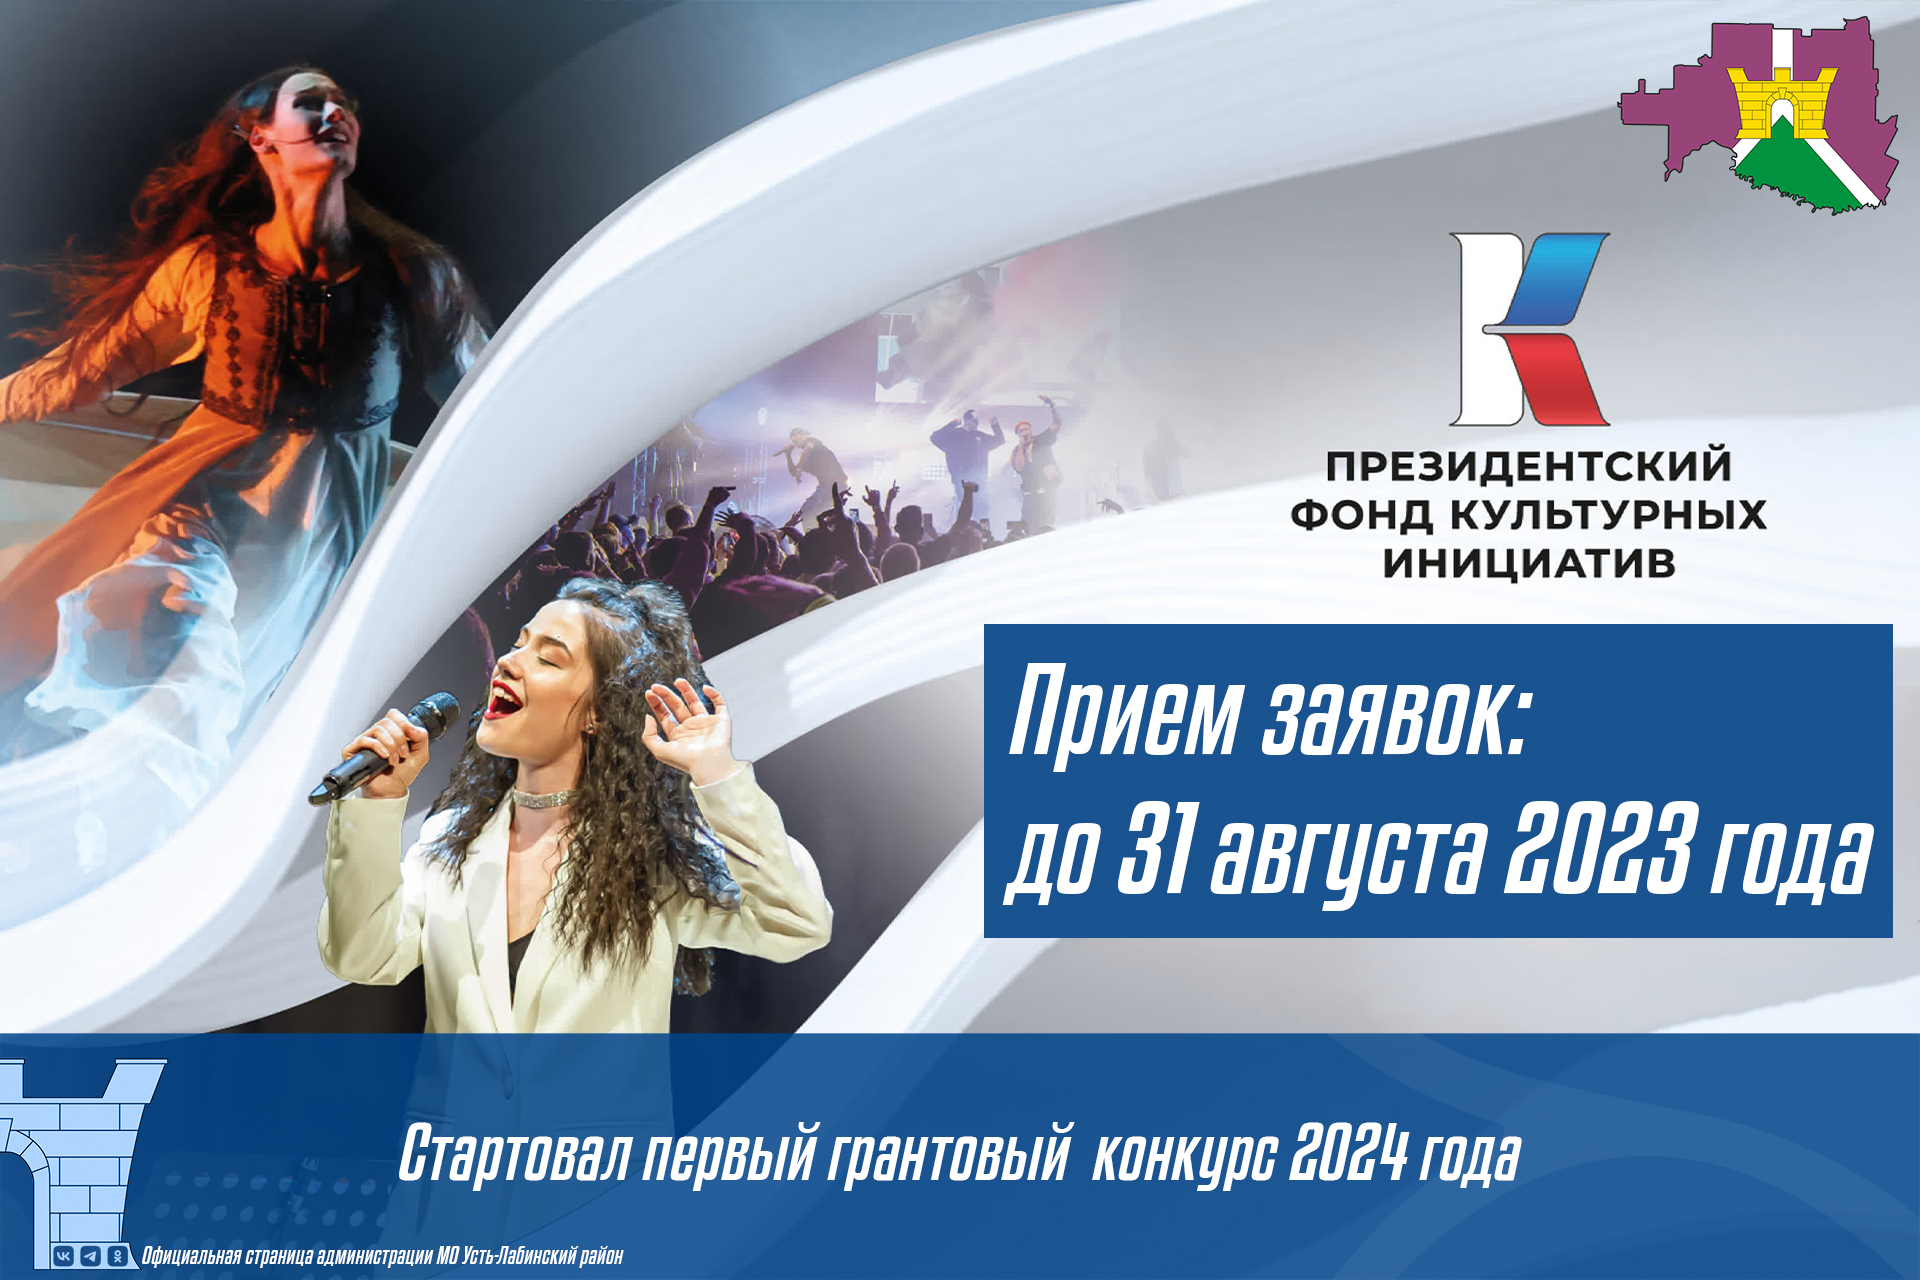 Первый конкурс 2024 года Президентского фонда культурных инициатив 